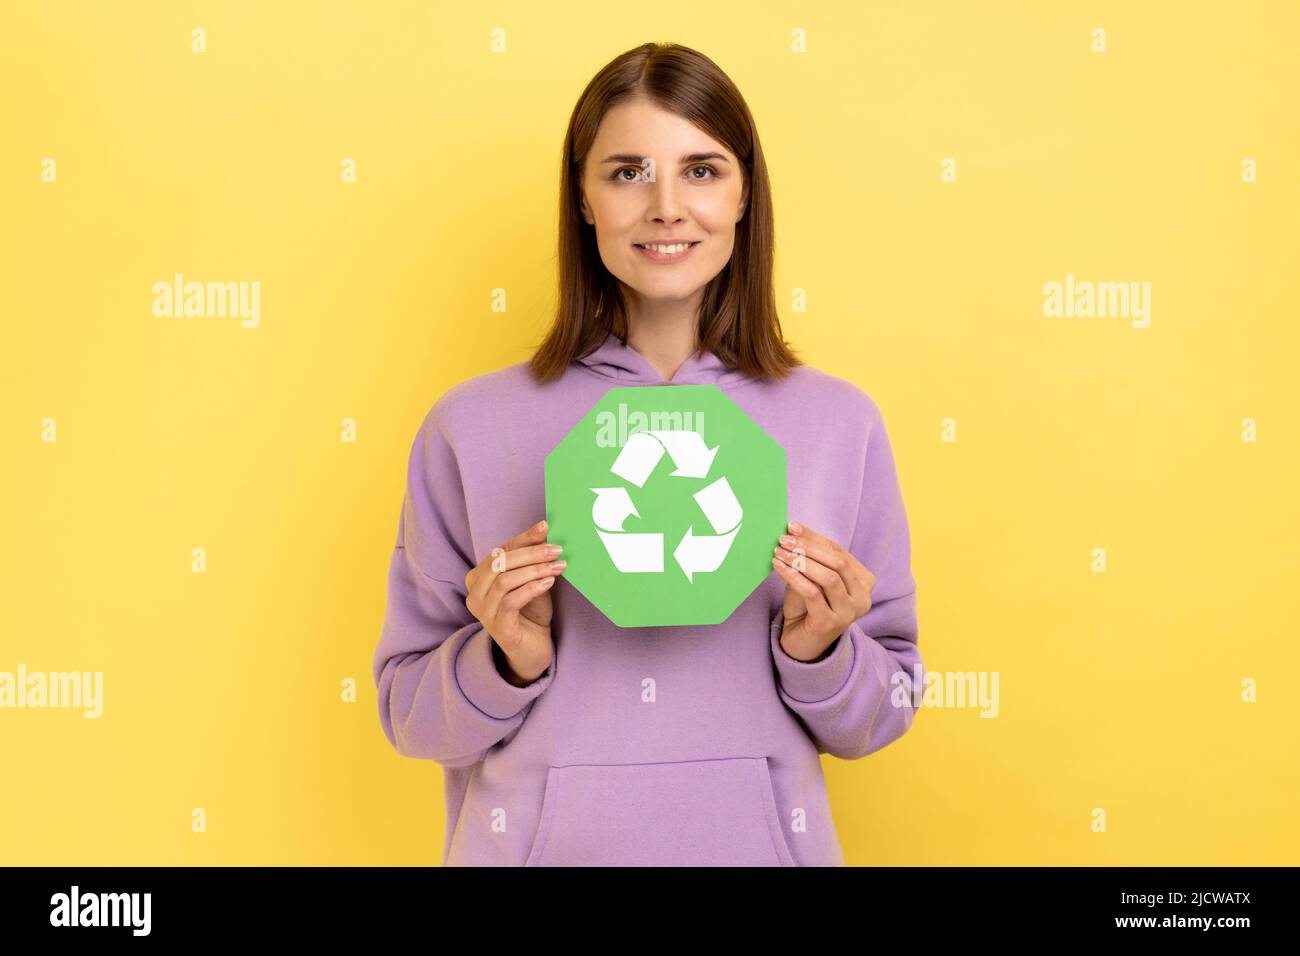 Lächelnde Frau mit dunklem Haar in den Händen halten grünes Recycling singen, Ökologie Konzept, Blick auf die Kamera, trägt lila Hoodie. Innenaufnahme des Studios isoliert auf gelbem Hintergrund. Stockfoto